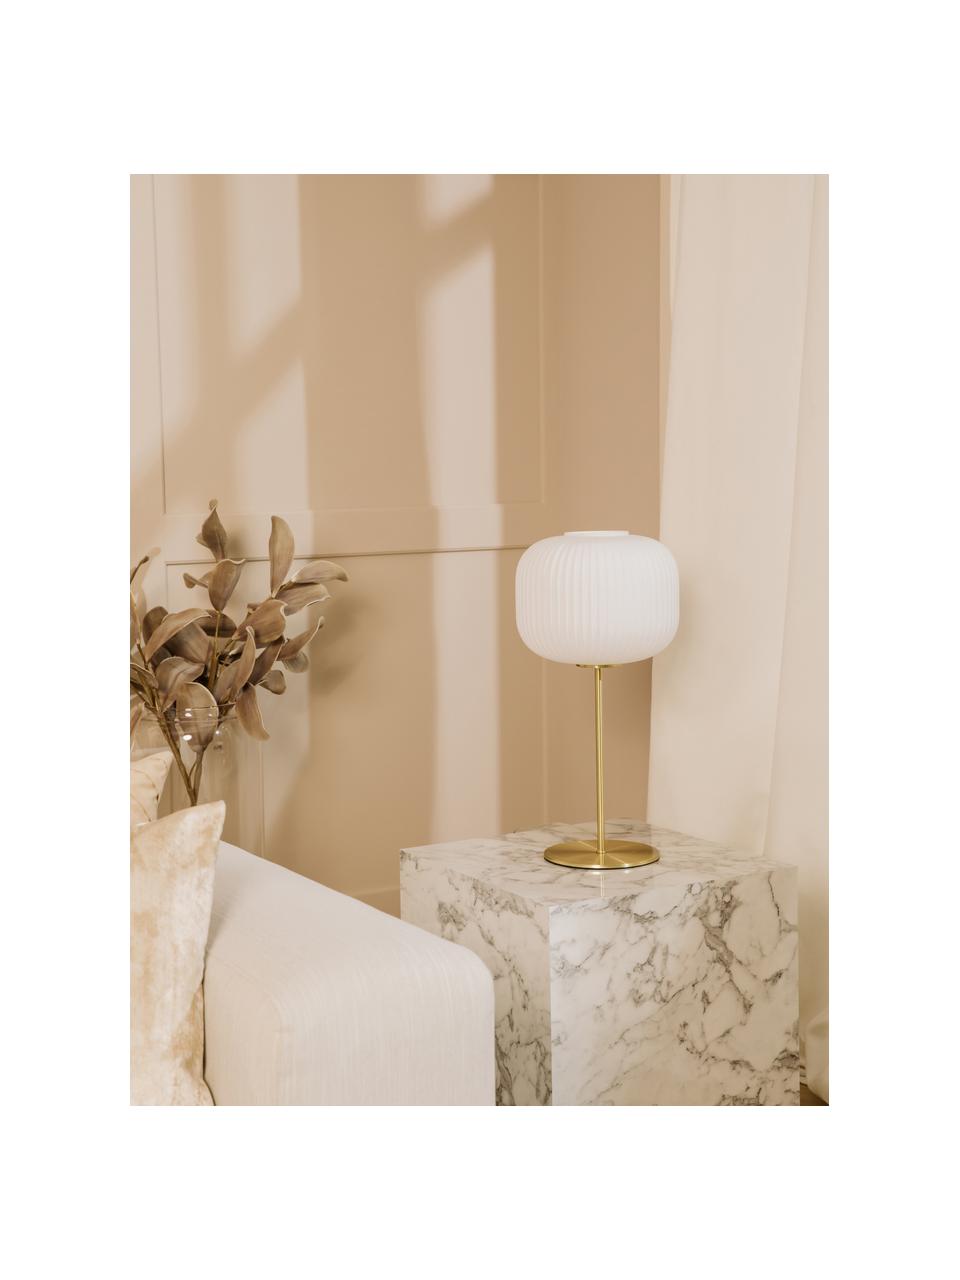 Große Tischlampe Sober mit Glasschirm, Lampenschirm: Glas, Lampenfuß: Metall, gebürstet, Weiß, Gold, Ø 25 x H 50 cm